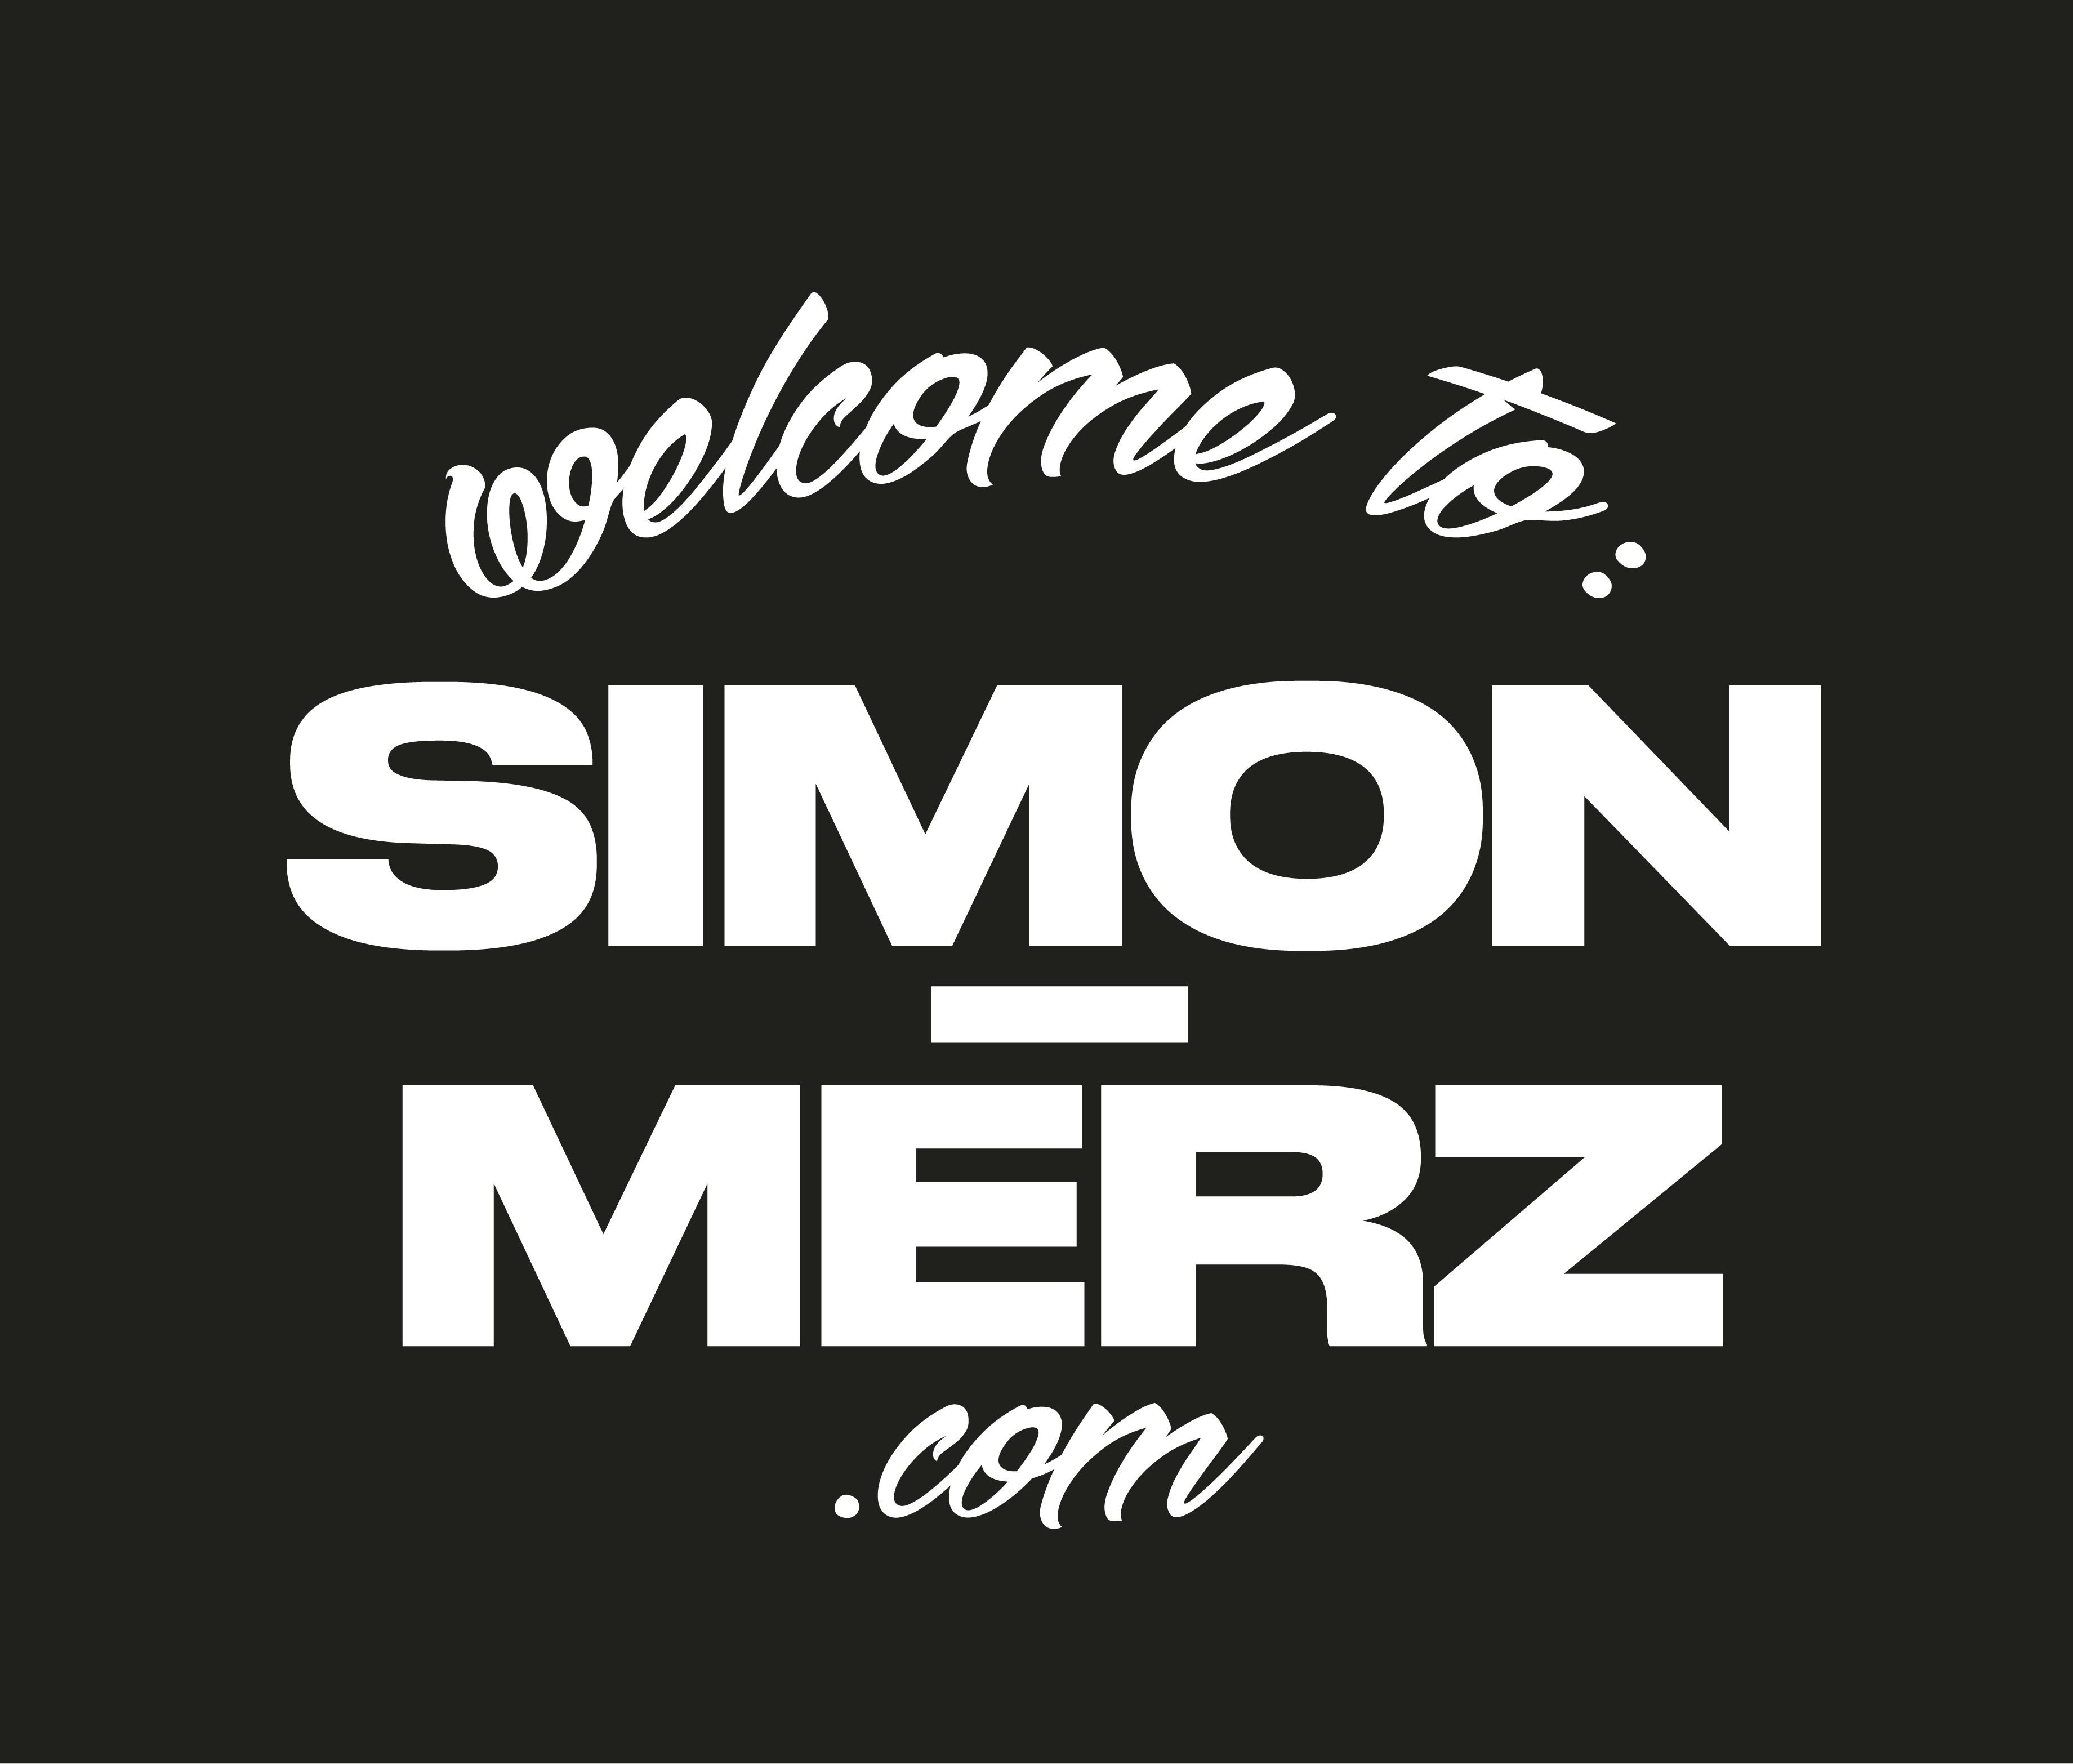 Simon Merz